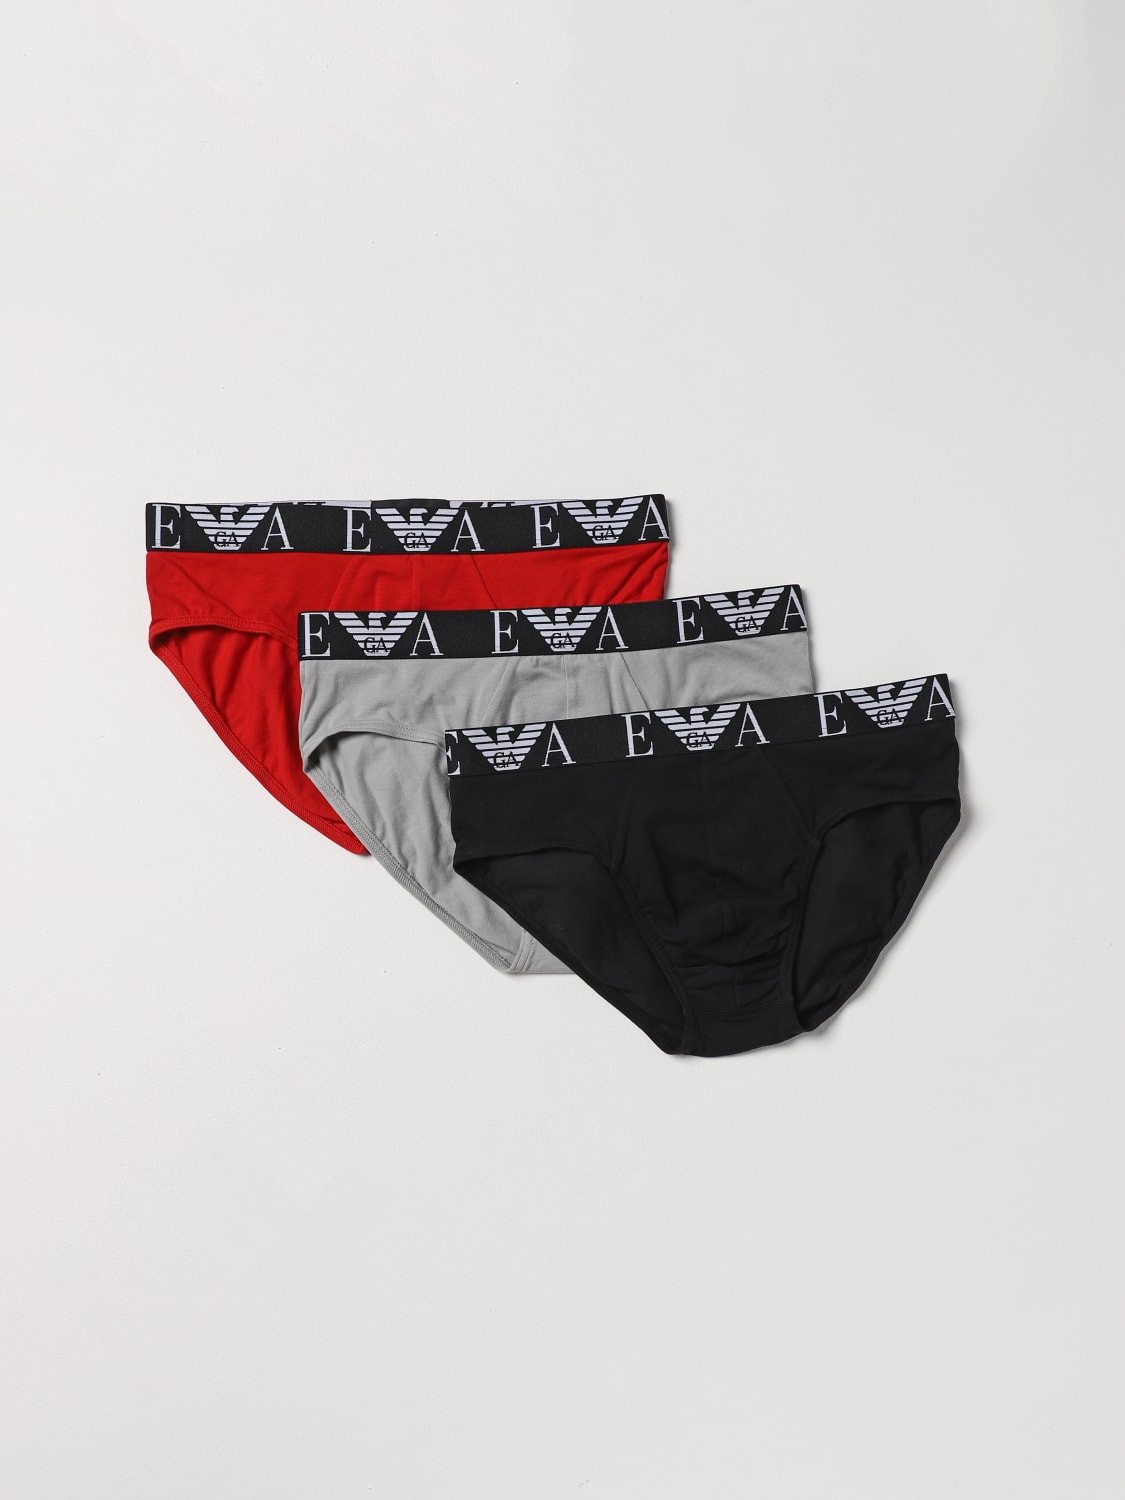 Emporio Armani Underwear for men, Buy online